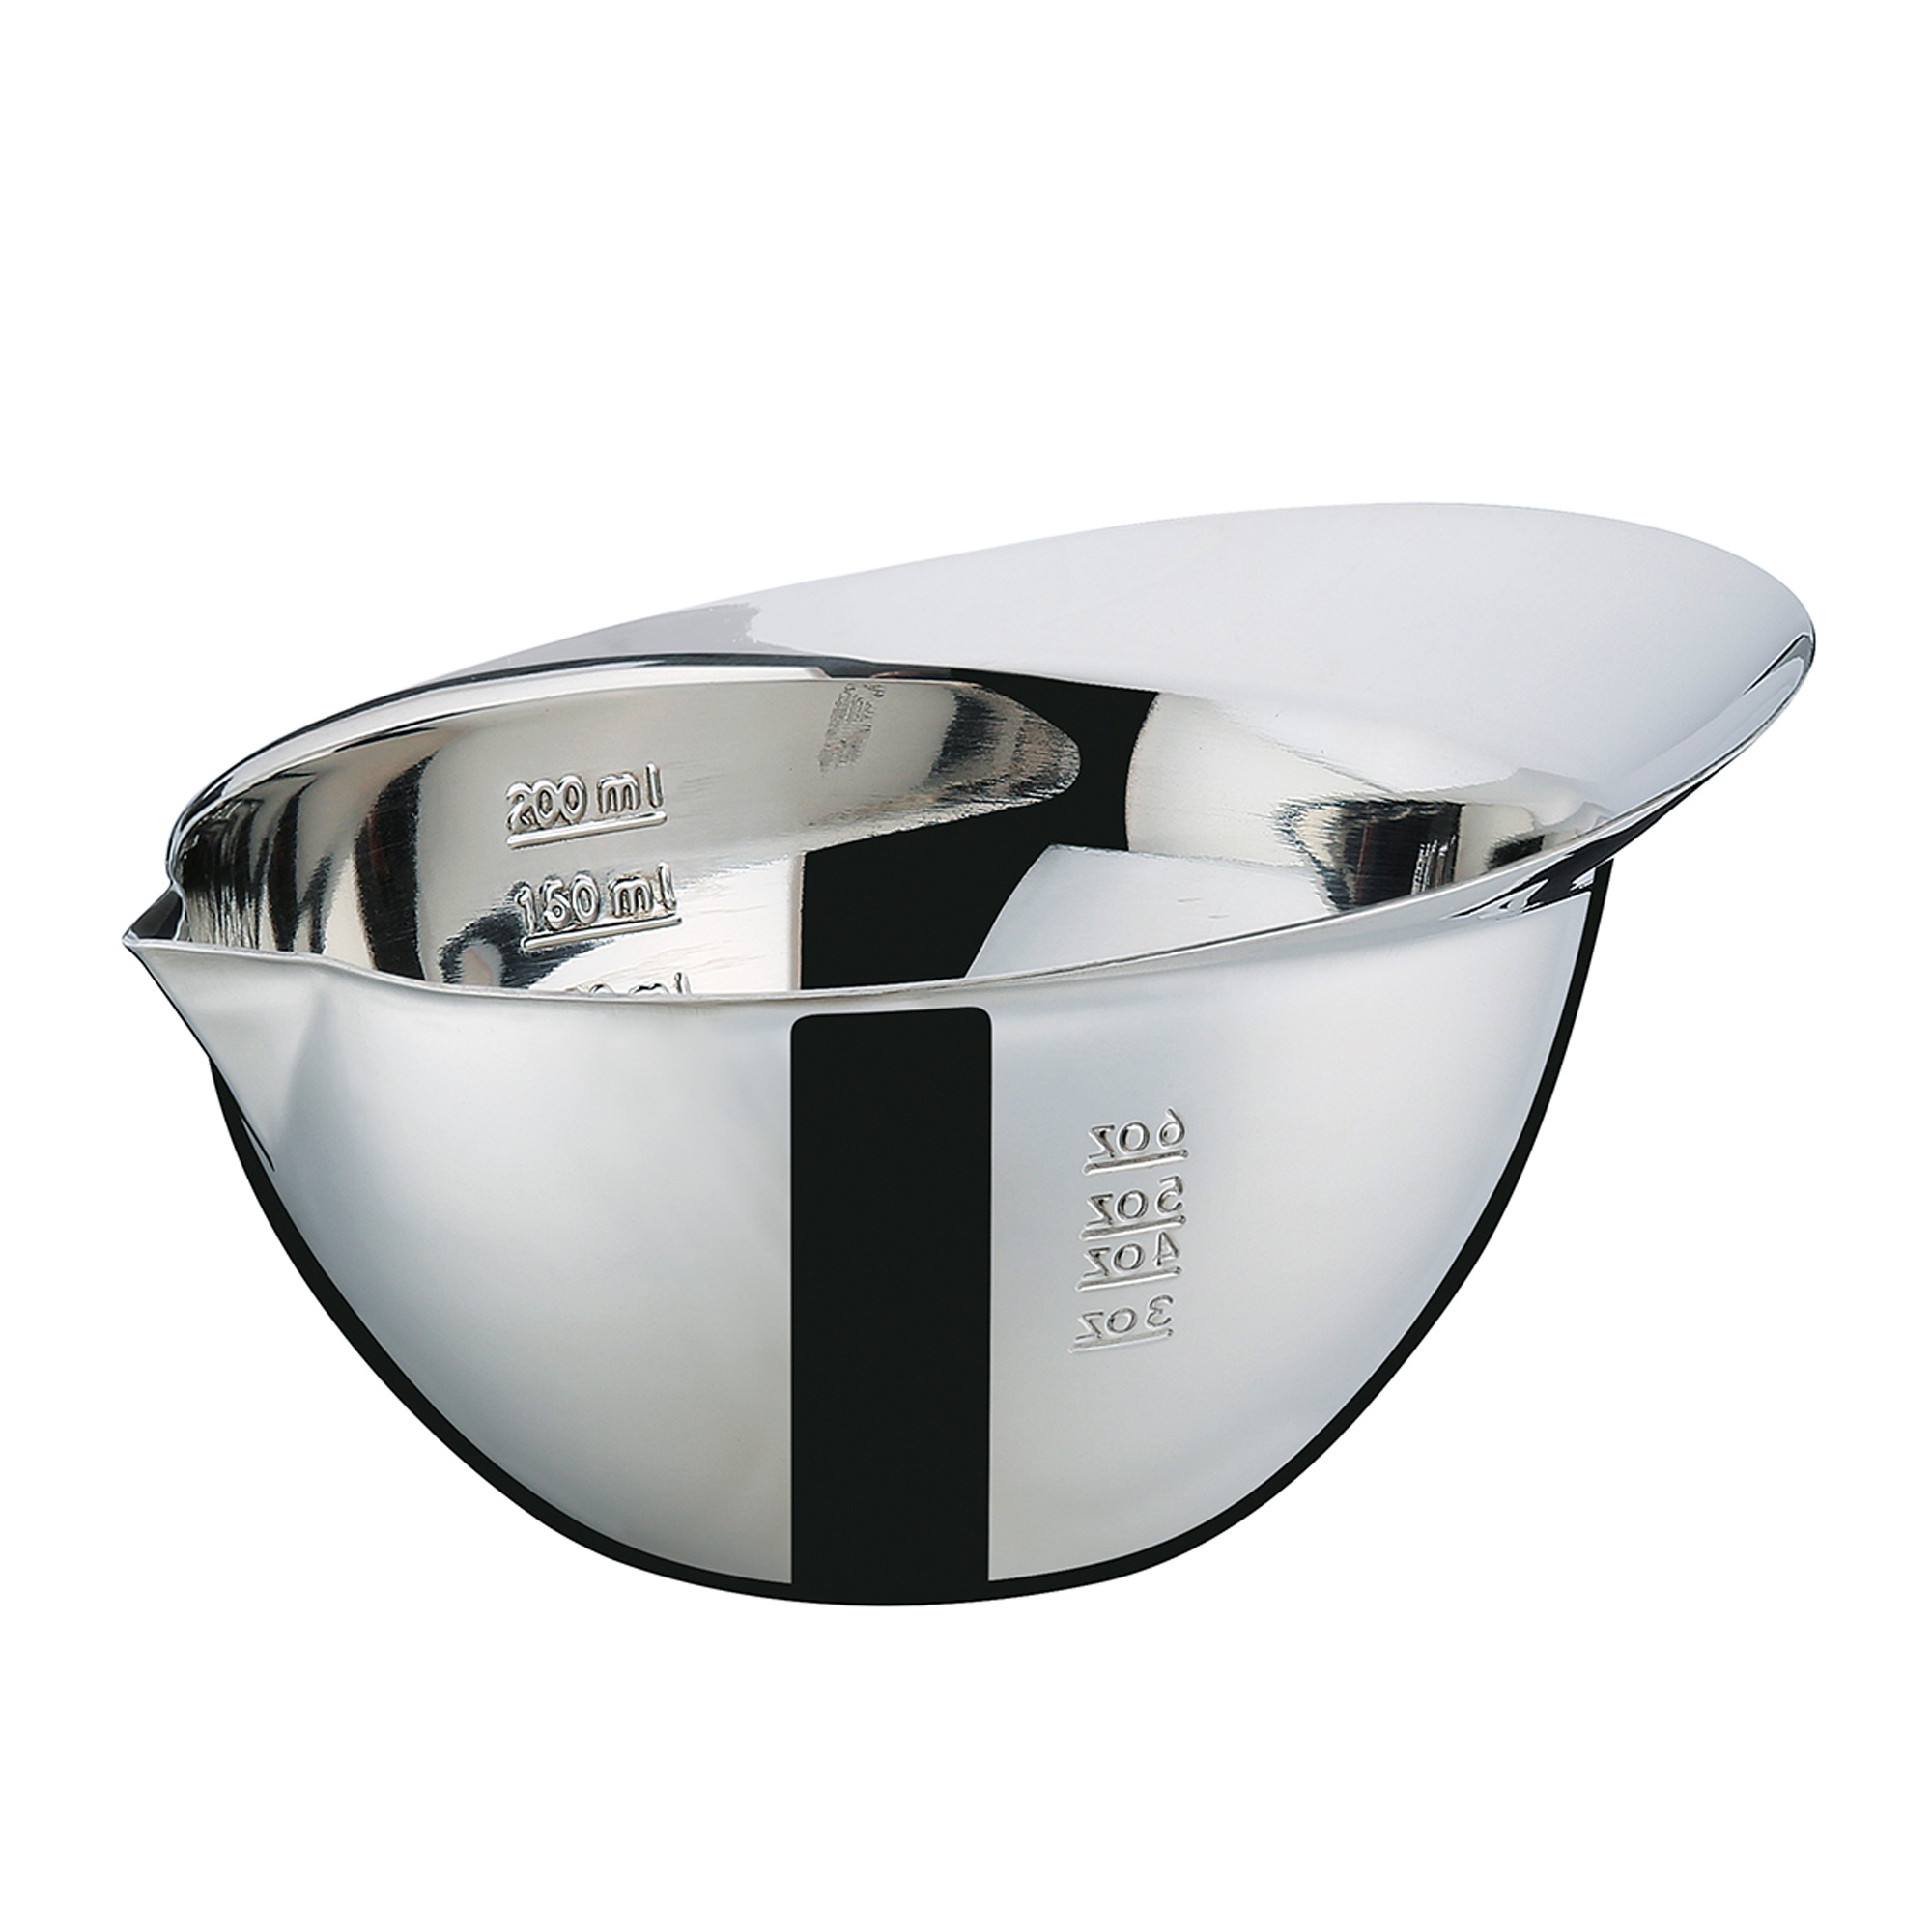 Küchenprofi - Measuring bowl - 200 ml